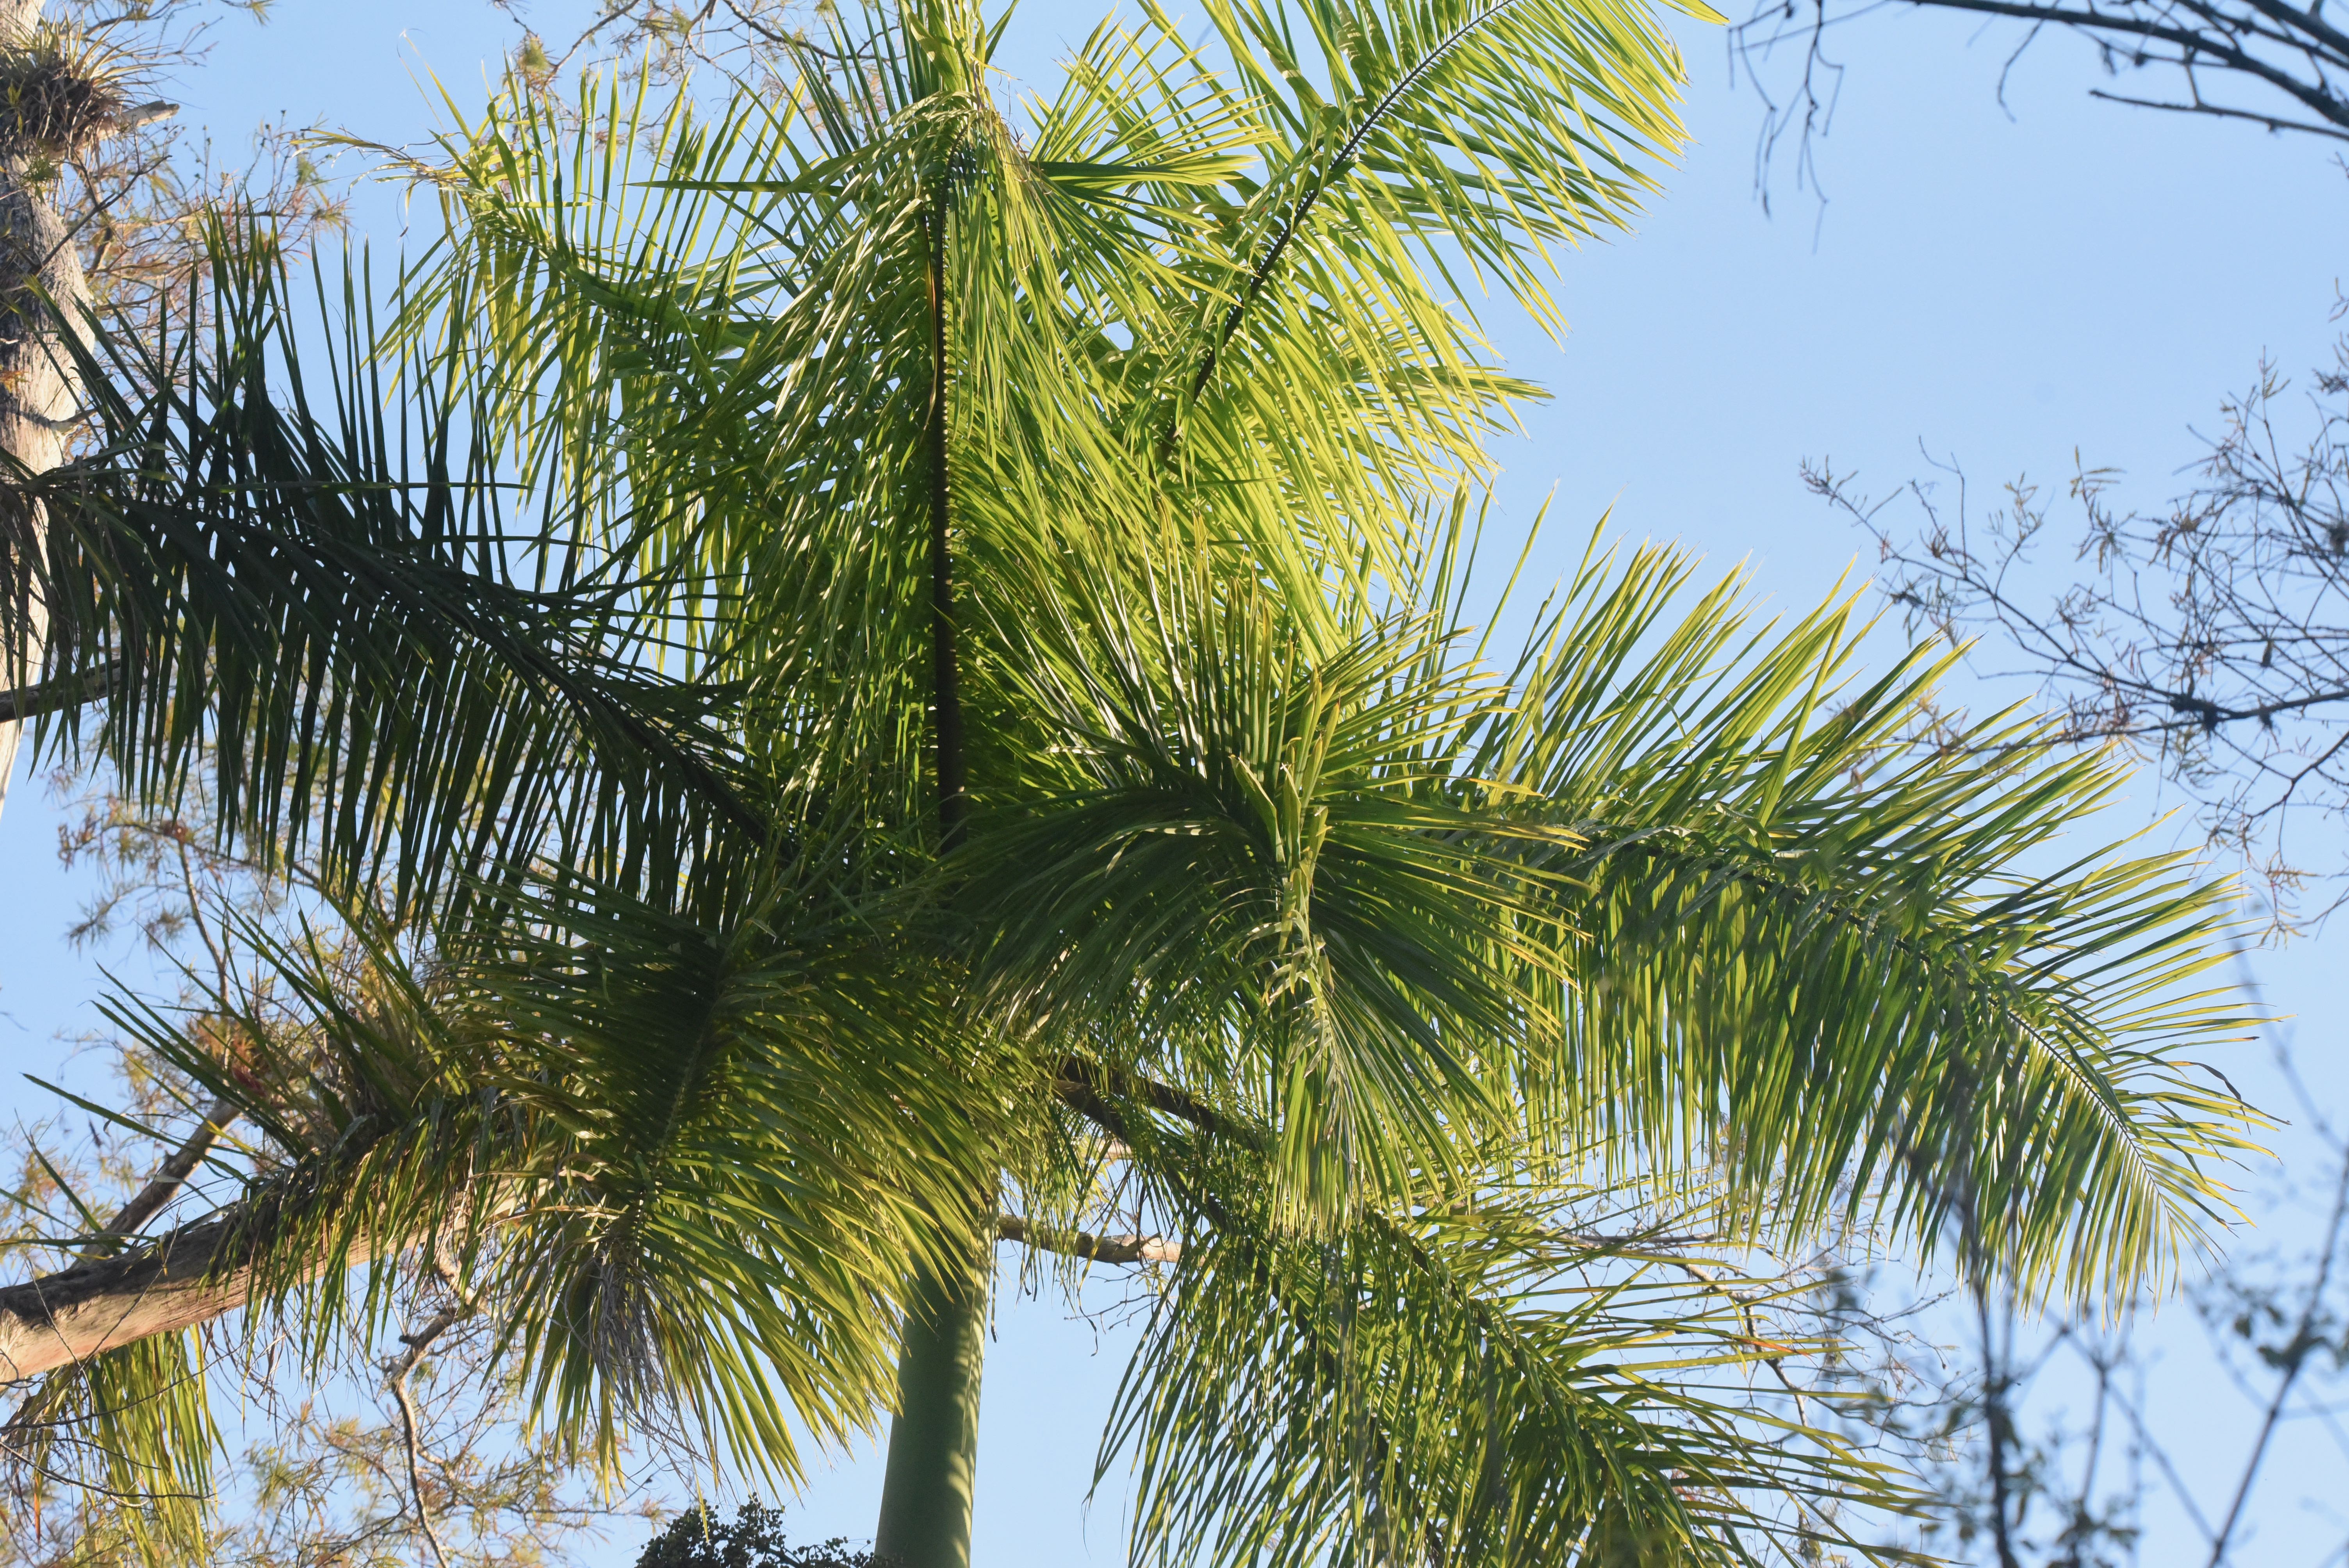 royal palm